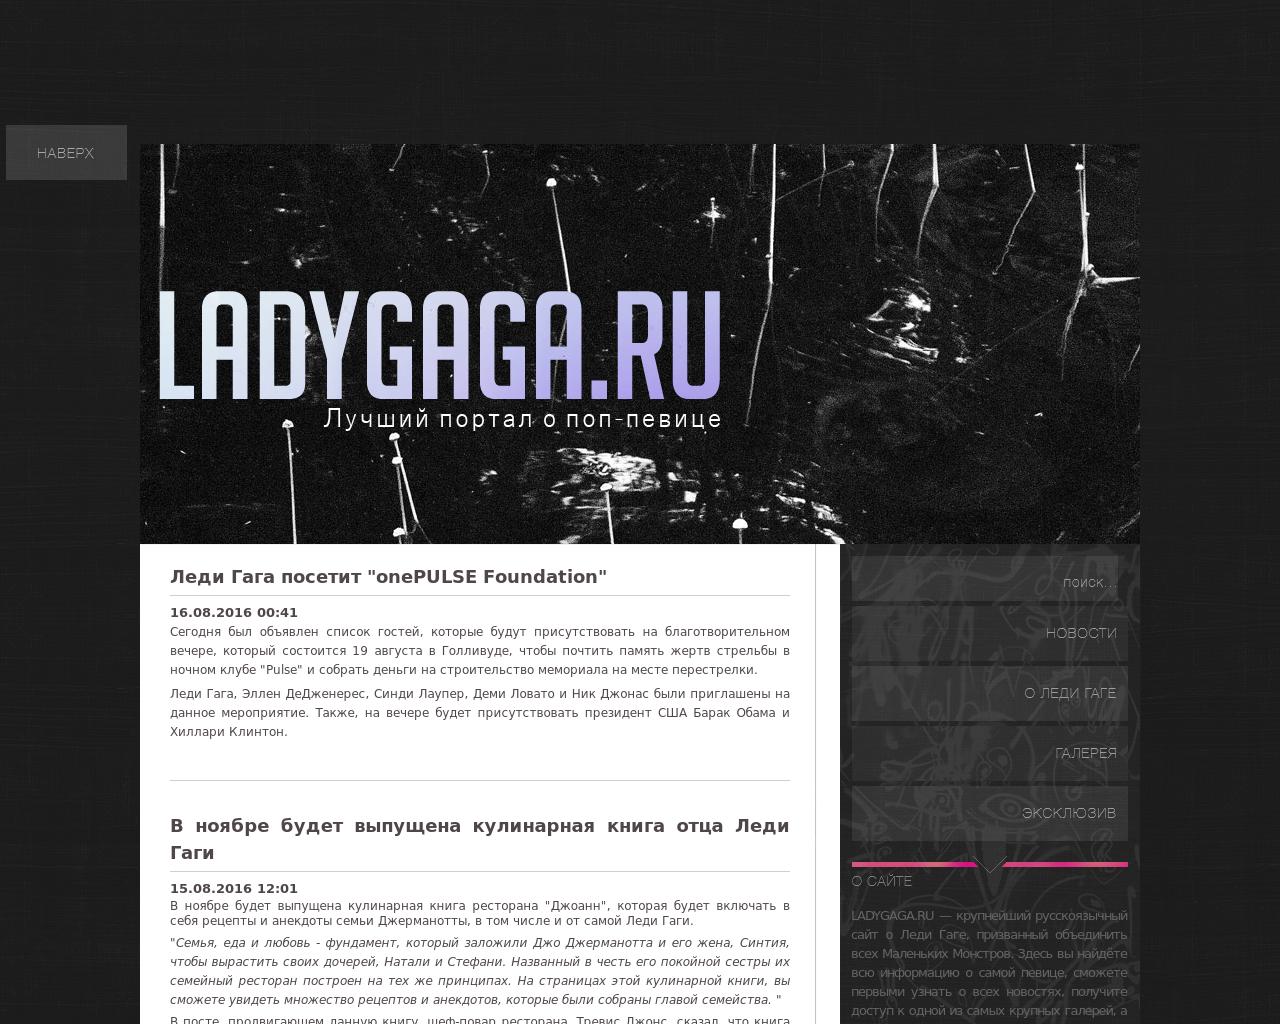 Изображение сайта ladygaga.ru в разрешении 1280x1024